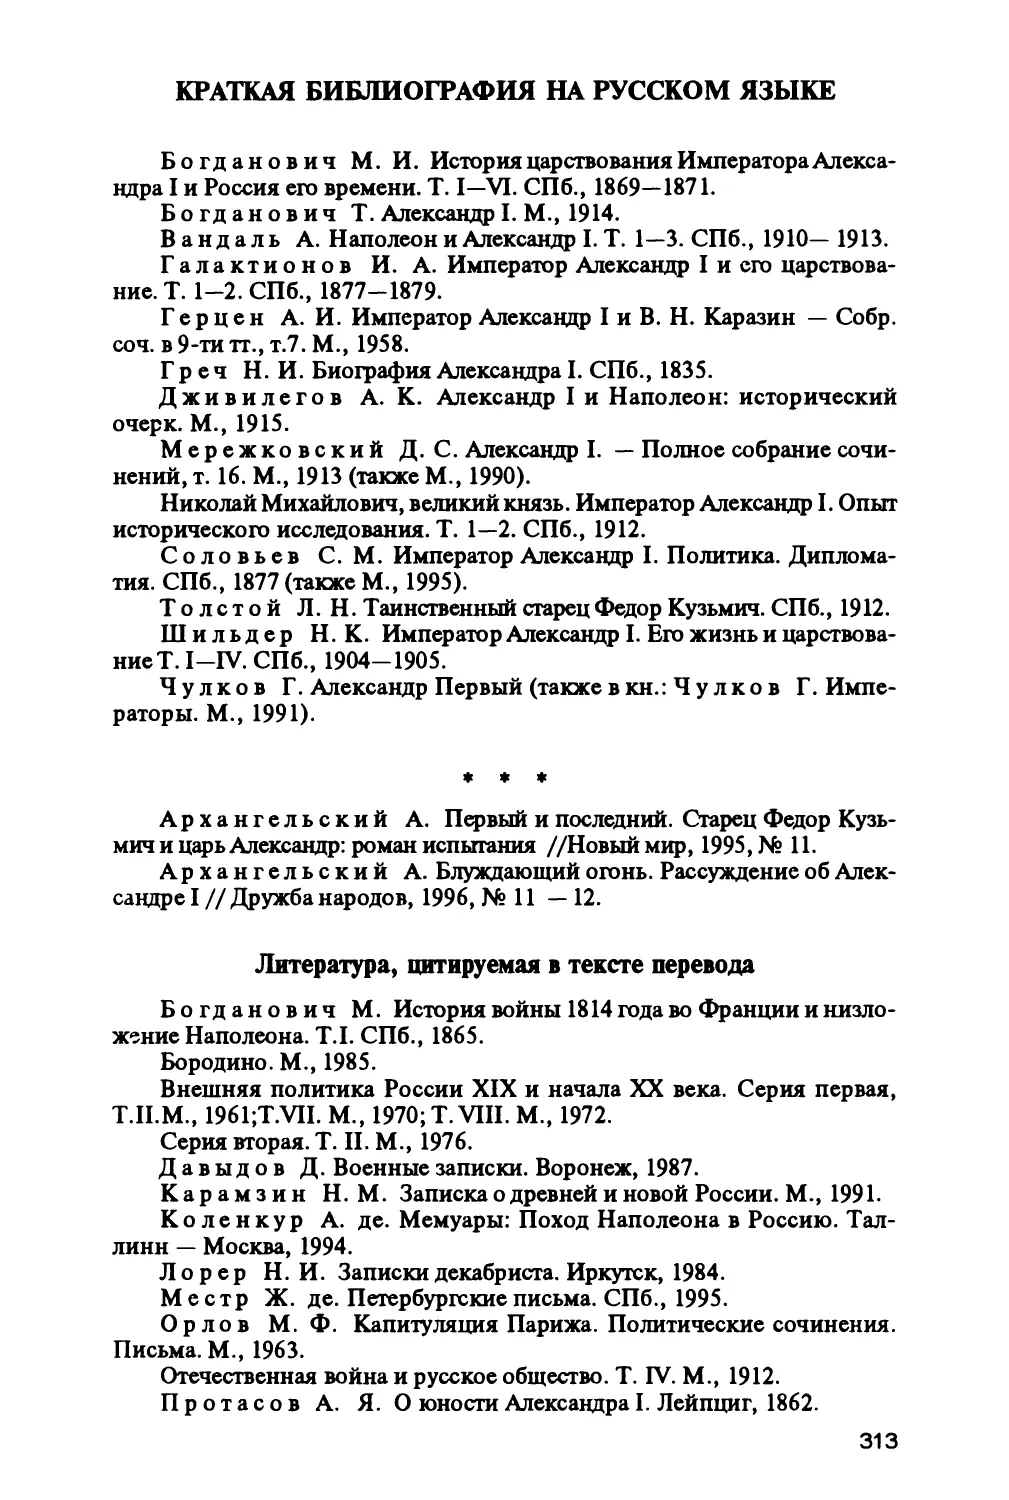 Краткая библиография на русском языке
Литература, цитируемая в тексте перевода